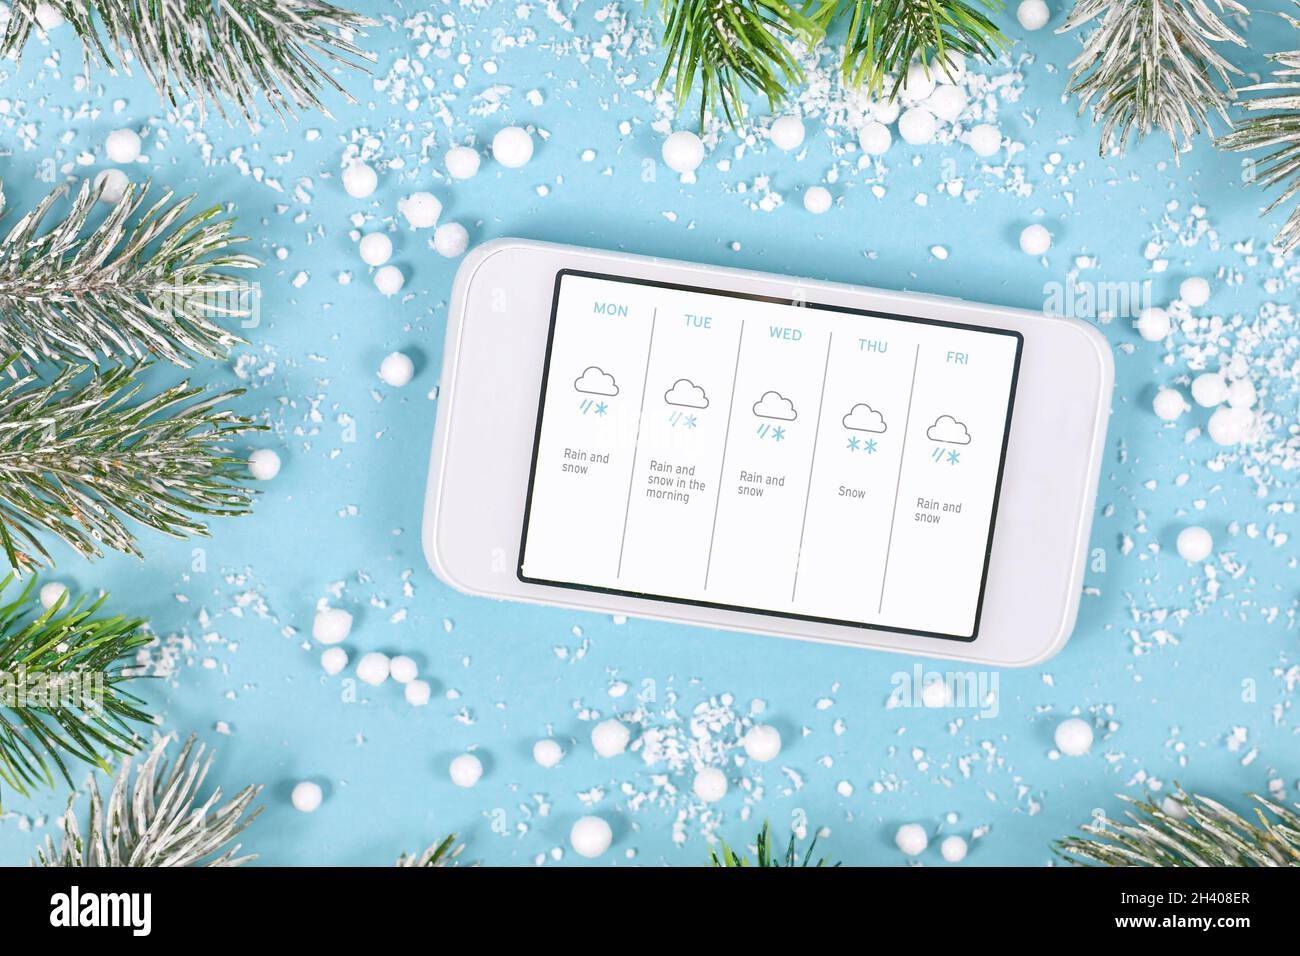 Concept pour les températures hivernales froides avec neige montrant téléphone mobile avec prévisions météorologiques Banque D'Images